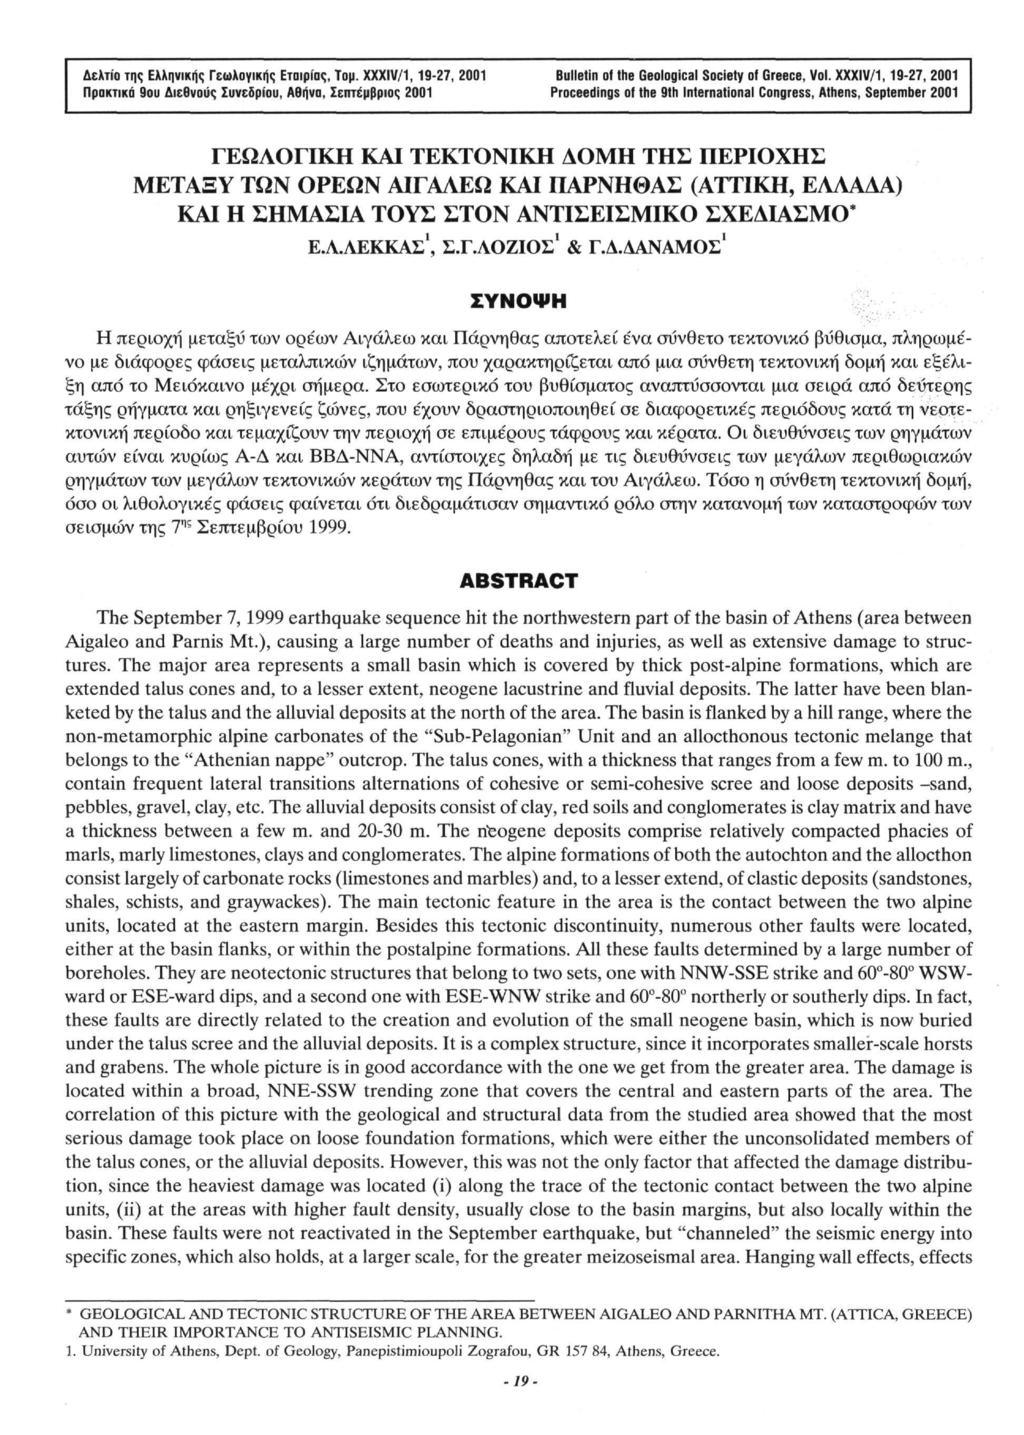 Δελτίο της Ελληνικής Γεωλογικής Εταιρίας, Τομ. XXXIV/1,19-27, 2001 Bulletin of the Geological Society of Greece, Vol.